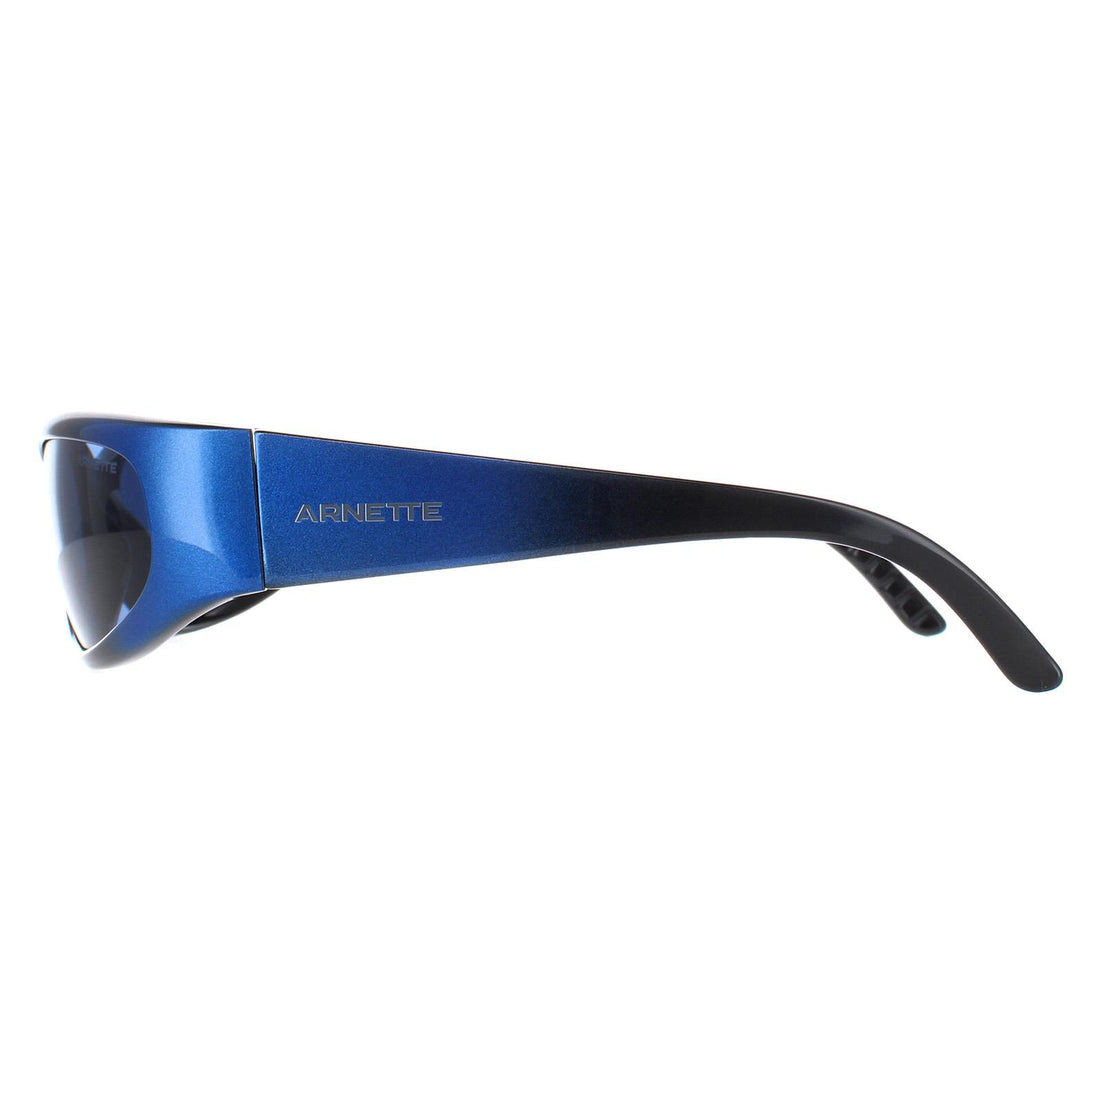 Arnette AN4302 Catfish Sunglasses